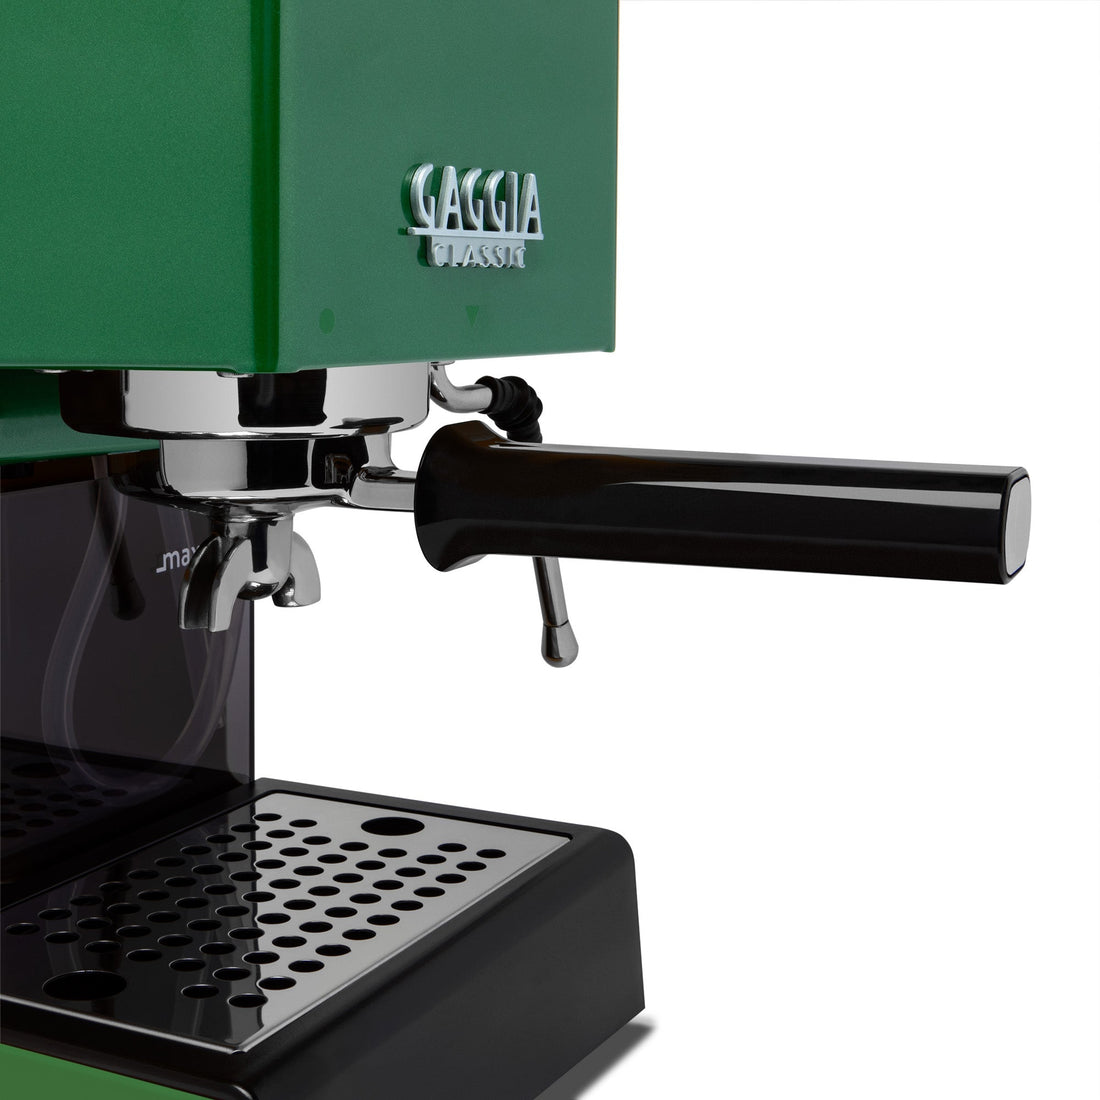 Gaggia Classic Evo Pro Espresso Machine in Jungle Green with Blackened Oak